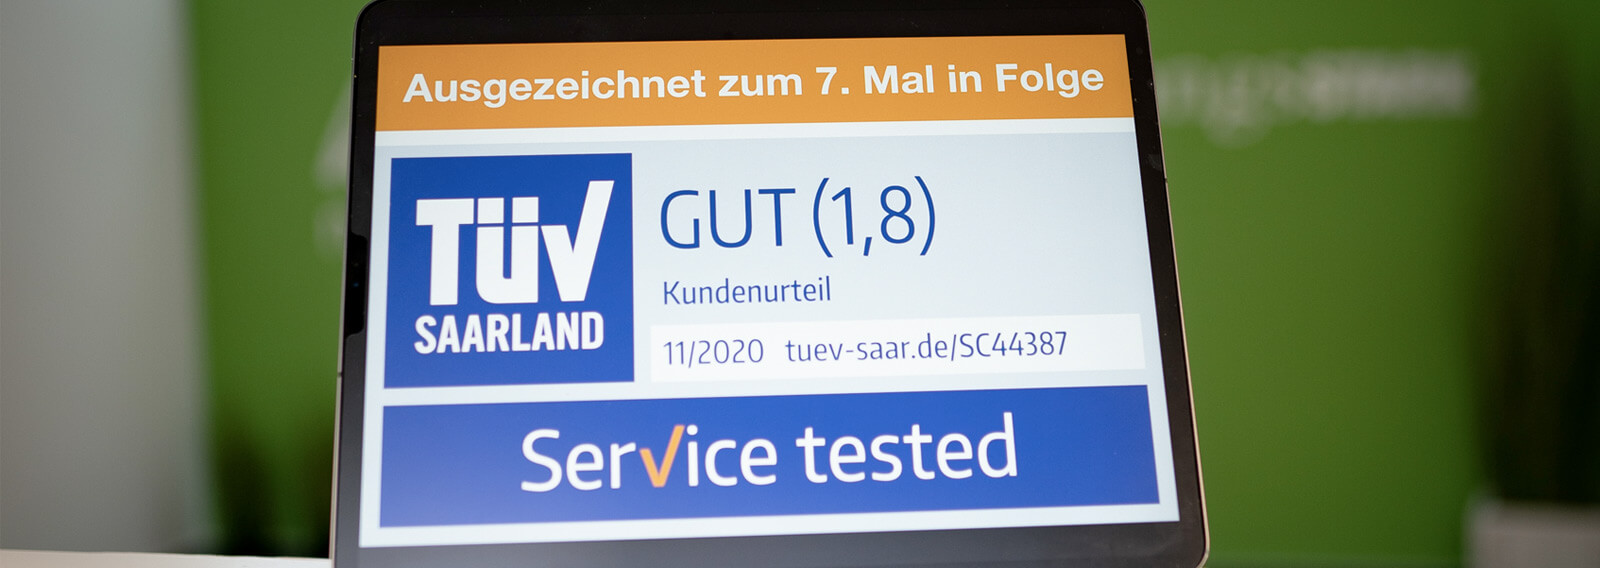 Darstellung des TÜV Siegels mit der Note "gut" auf einem Tabletdisplay.